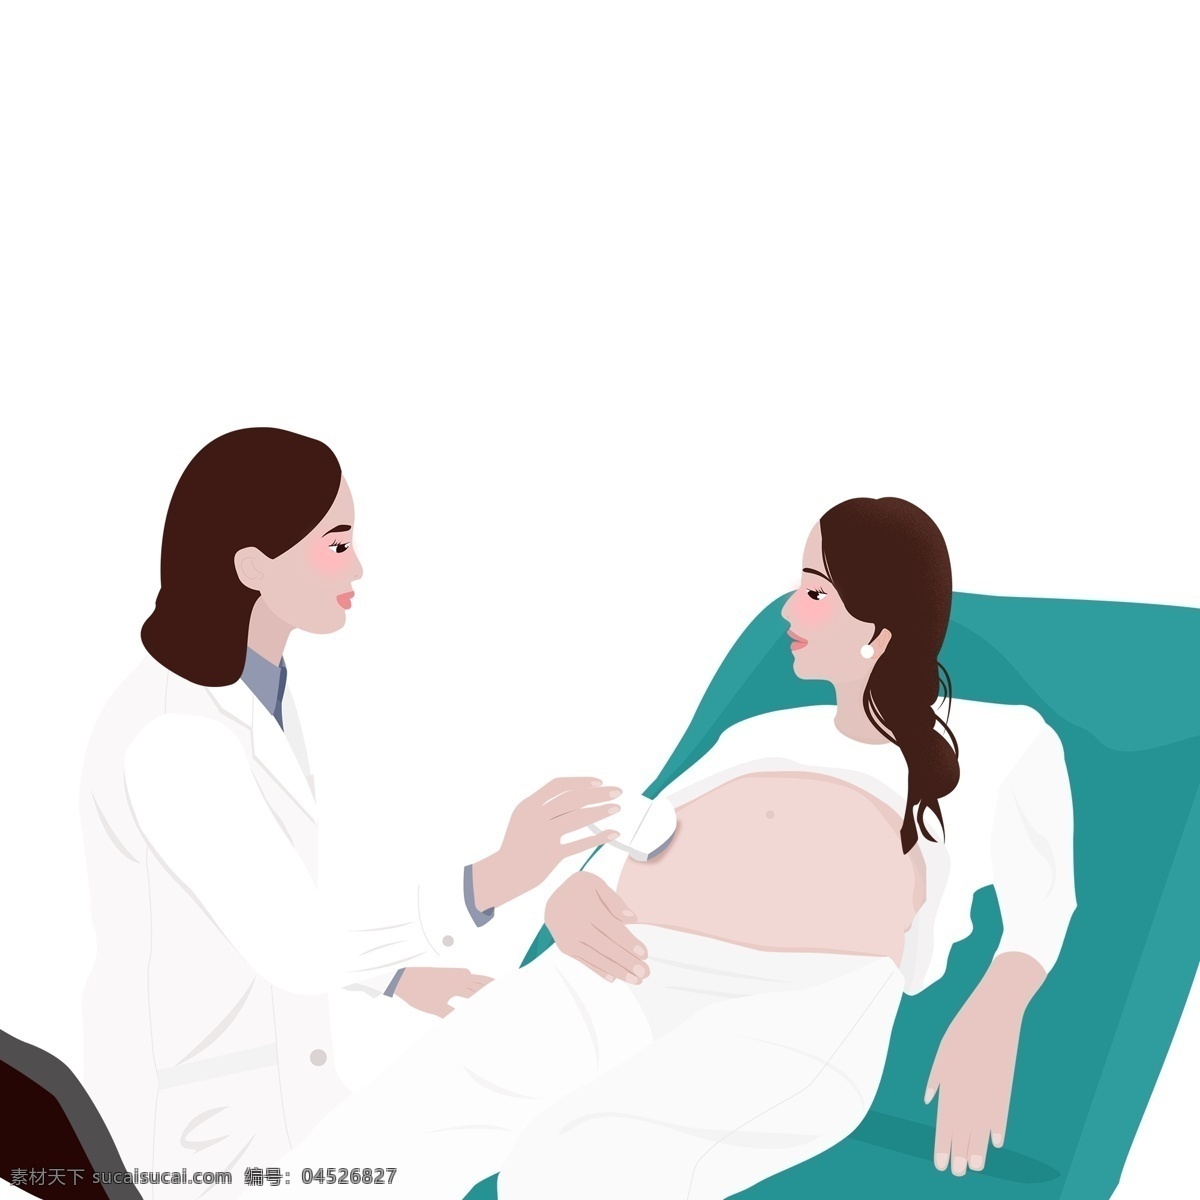 扁平 化做 产 检 孕妇 人物 扁平化 简约 卡通 创意 医疗场景 医生 孕检